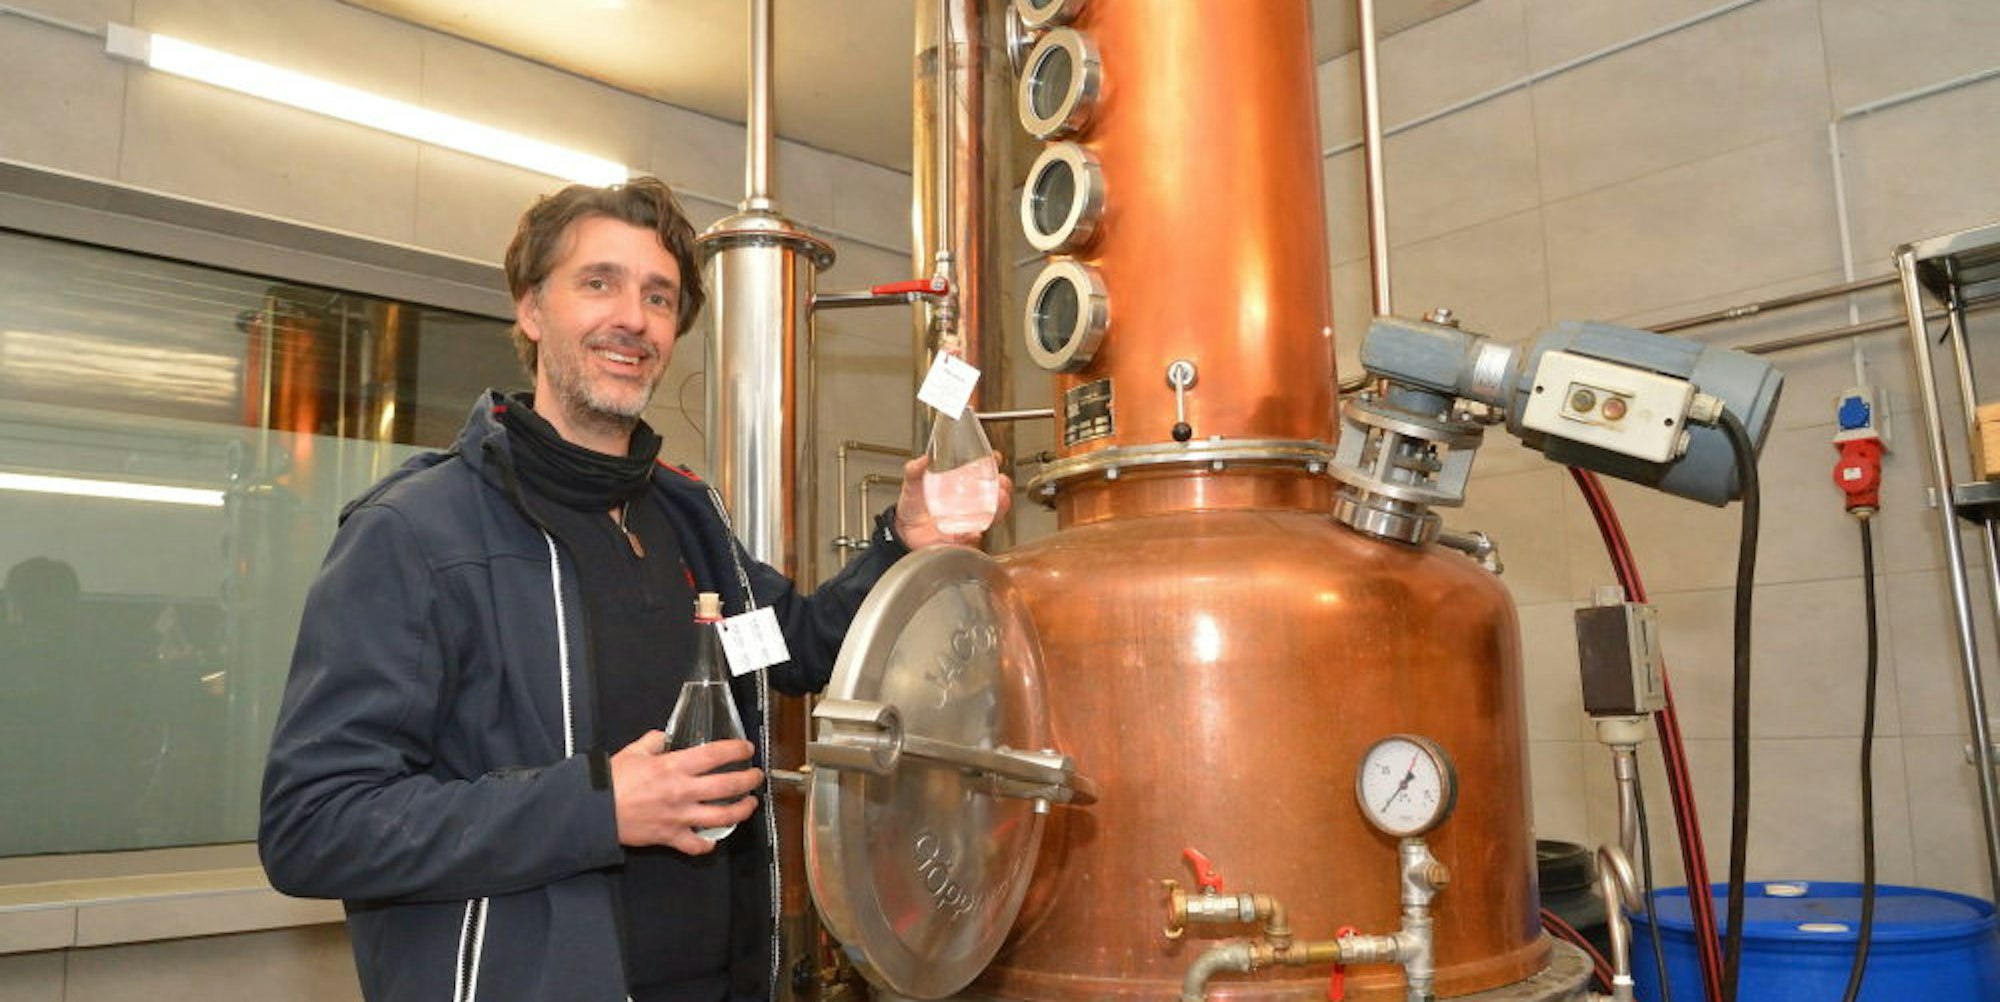 Inhaber Tino Müllenbach produziert in seiner Kornbrennerei zurzeit reinen Alkohol für Apotheken.